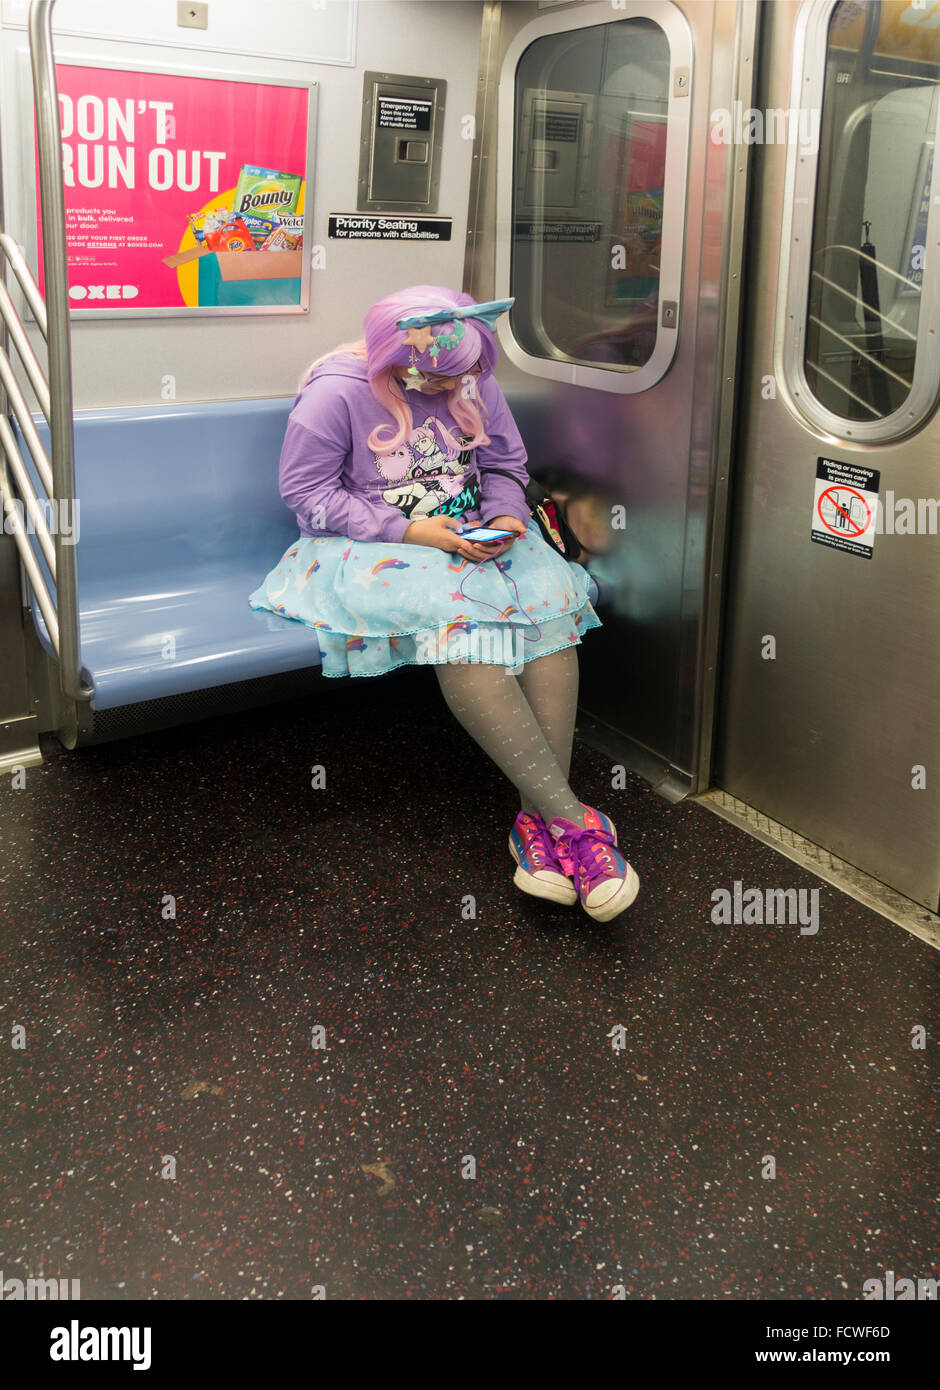 Cosplay Kostüm Frau in Feen Outfit innen U-Bahn-Zug gekleidet Auto New York  City Stockfotografie - Alamy